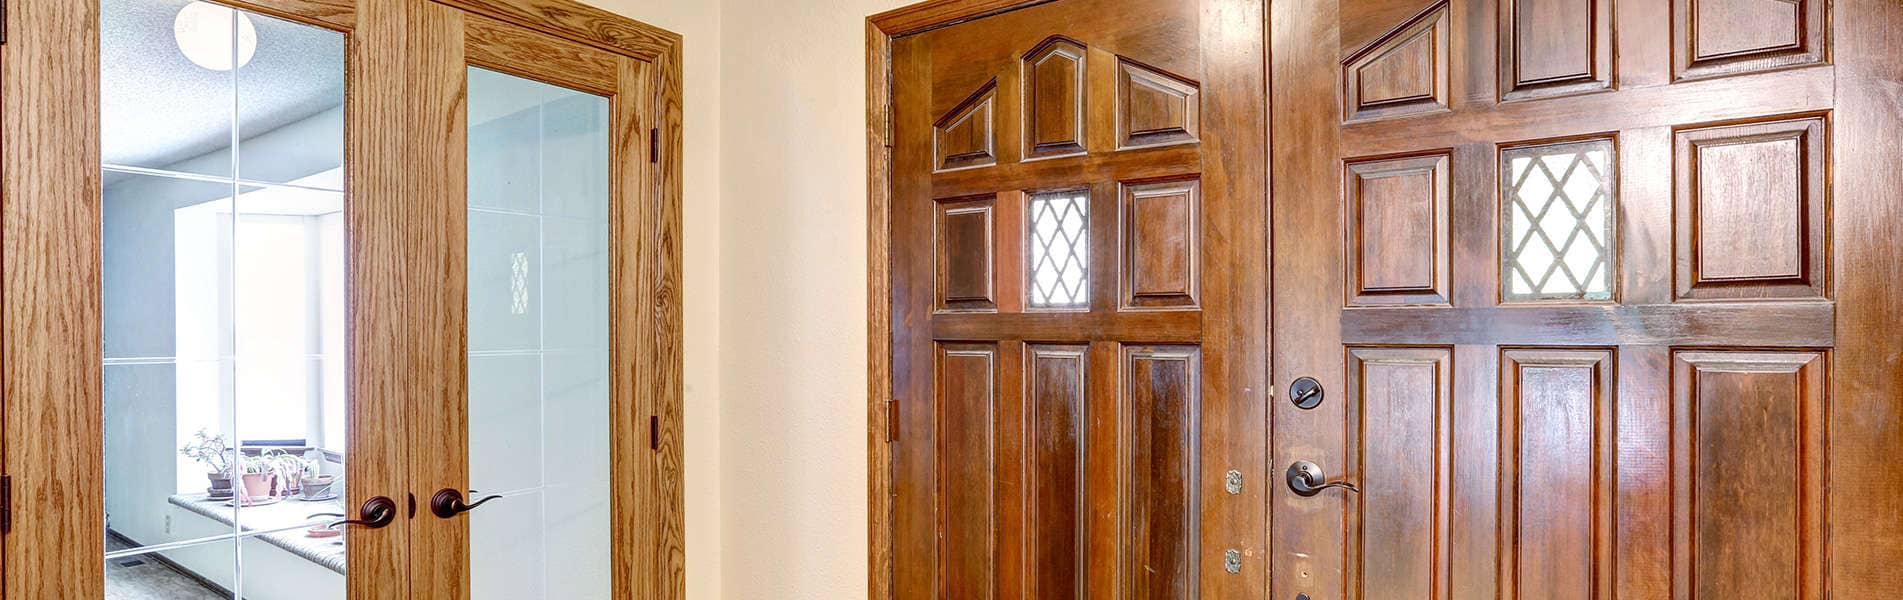 wooden-doors